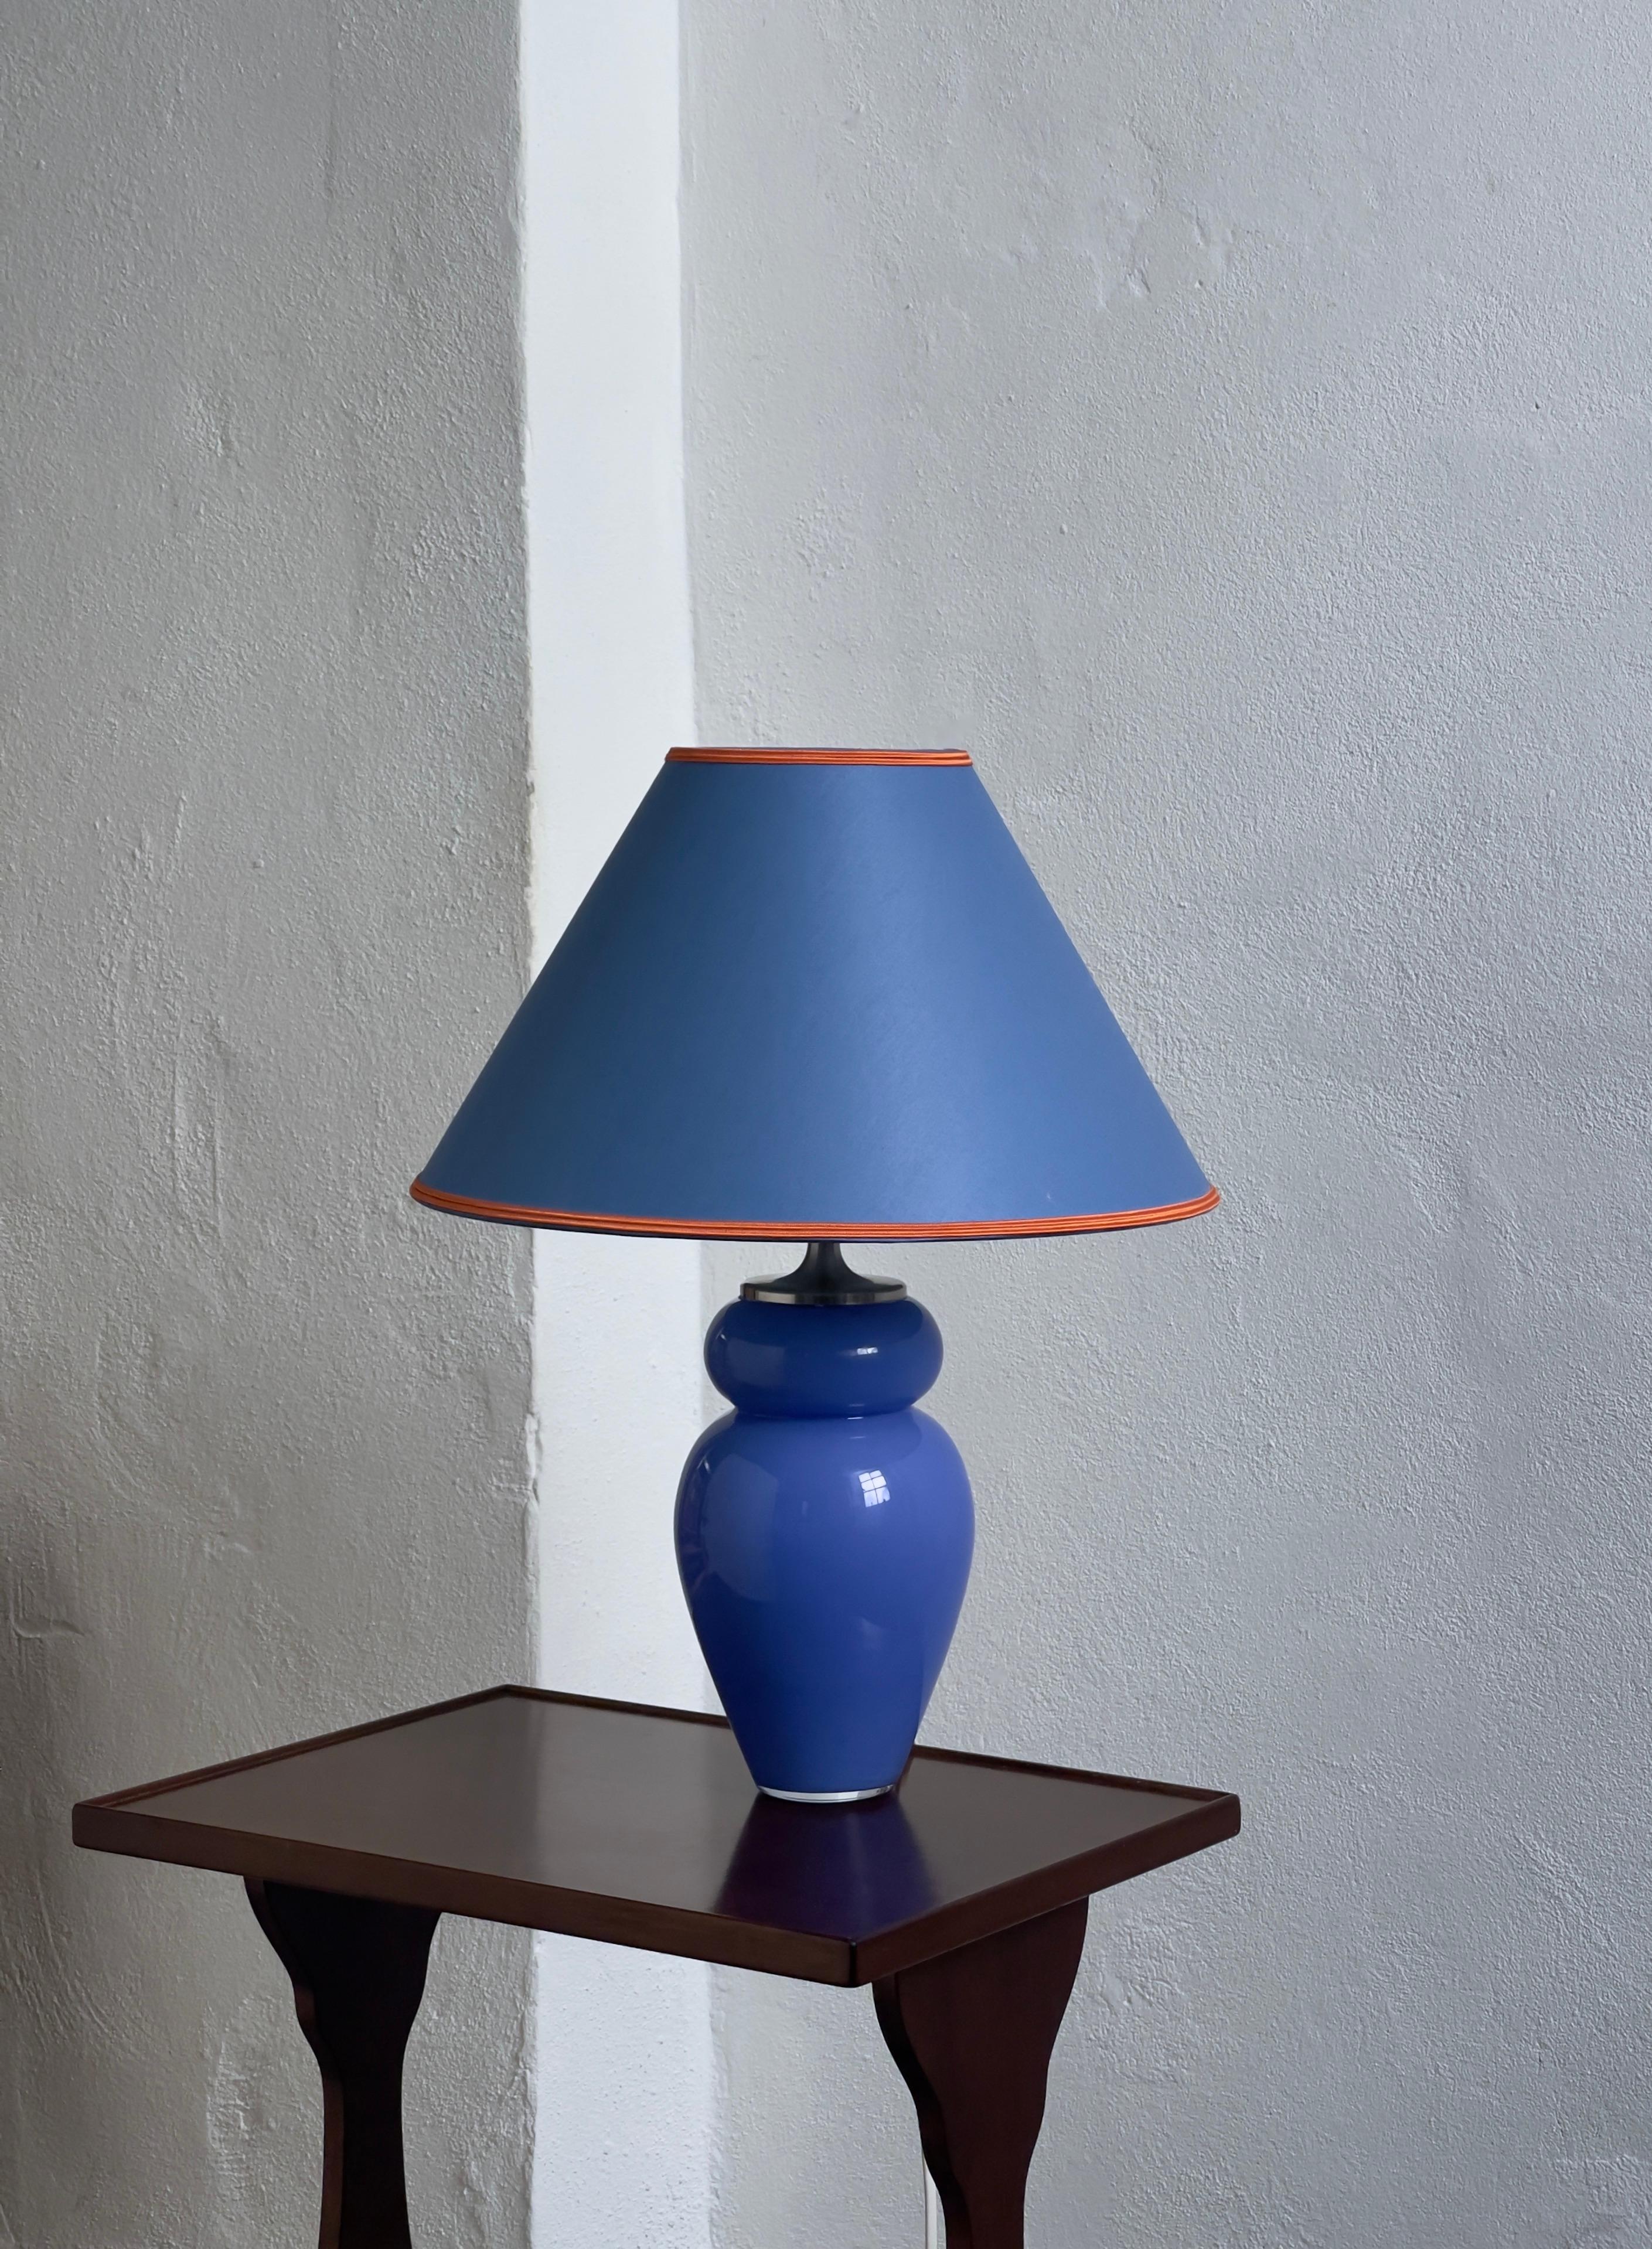 1980er Jahre Original Royal Copenhagen Tischlampe aus blauem Kristallglas mit original blauem Seidenlampenschirm mit orangefarbenem Faden. Die Lampe ist in gutem Zustand und bringt einen eleganten Funken in Ihre moderne Inneneinrichtung.